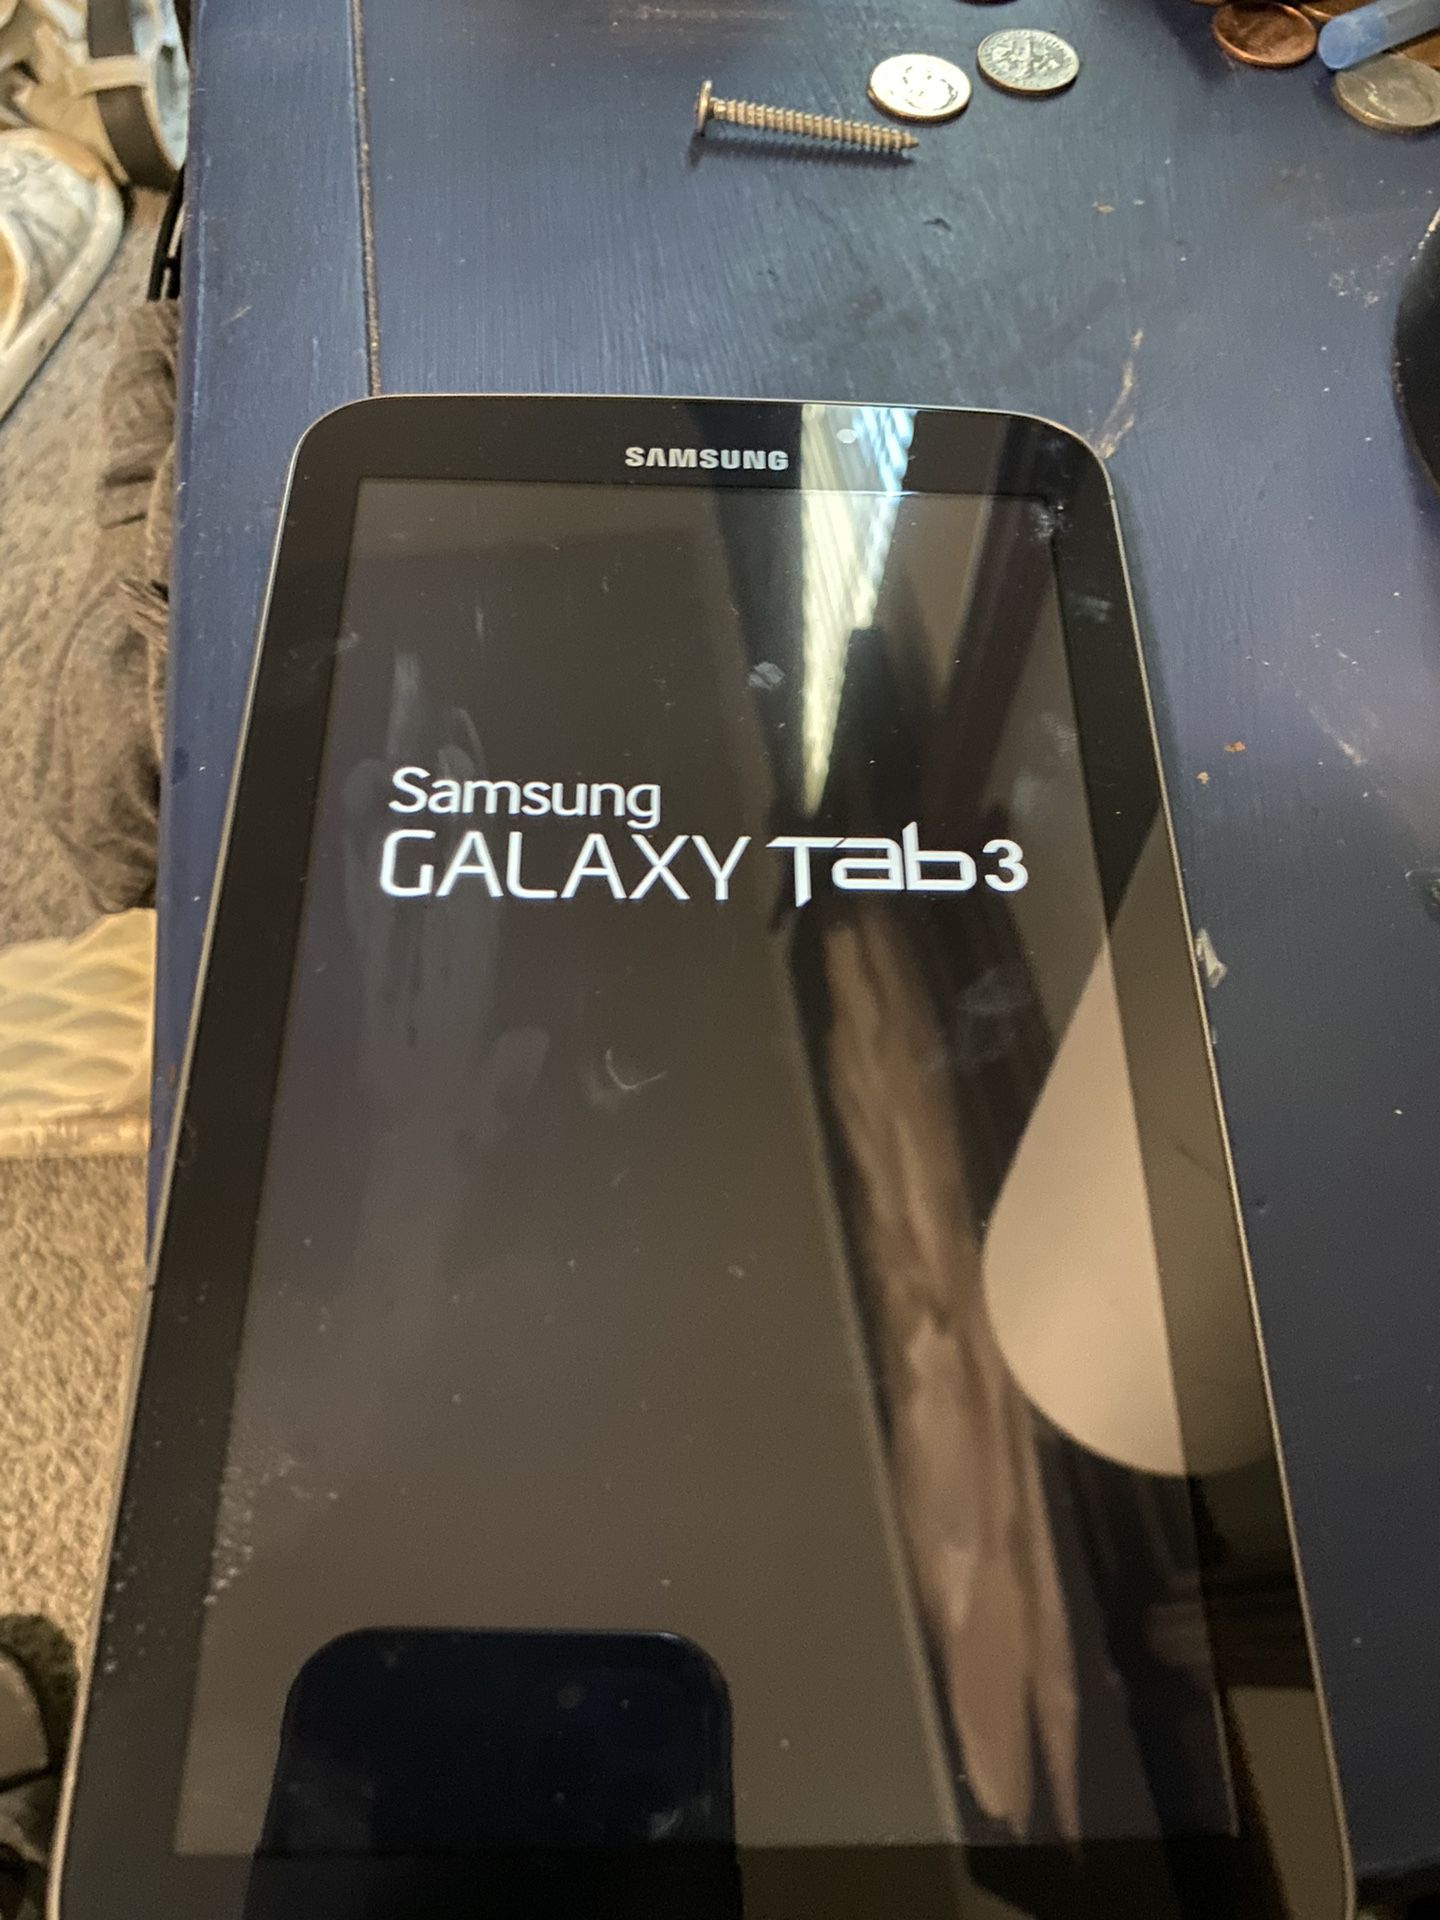 Galaxy Tab 3 